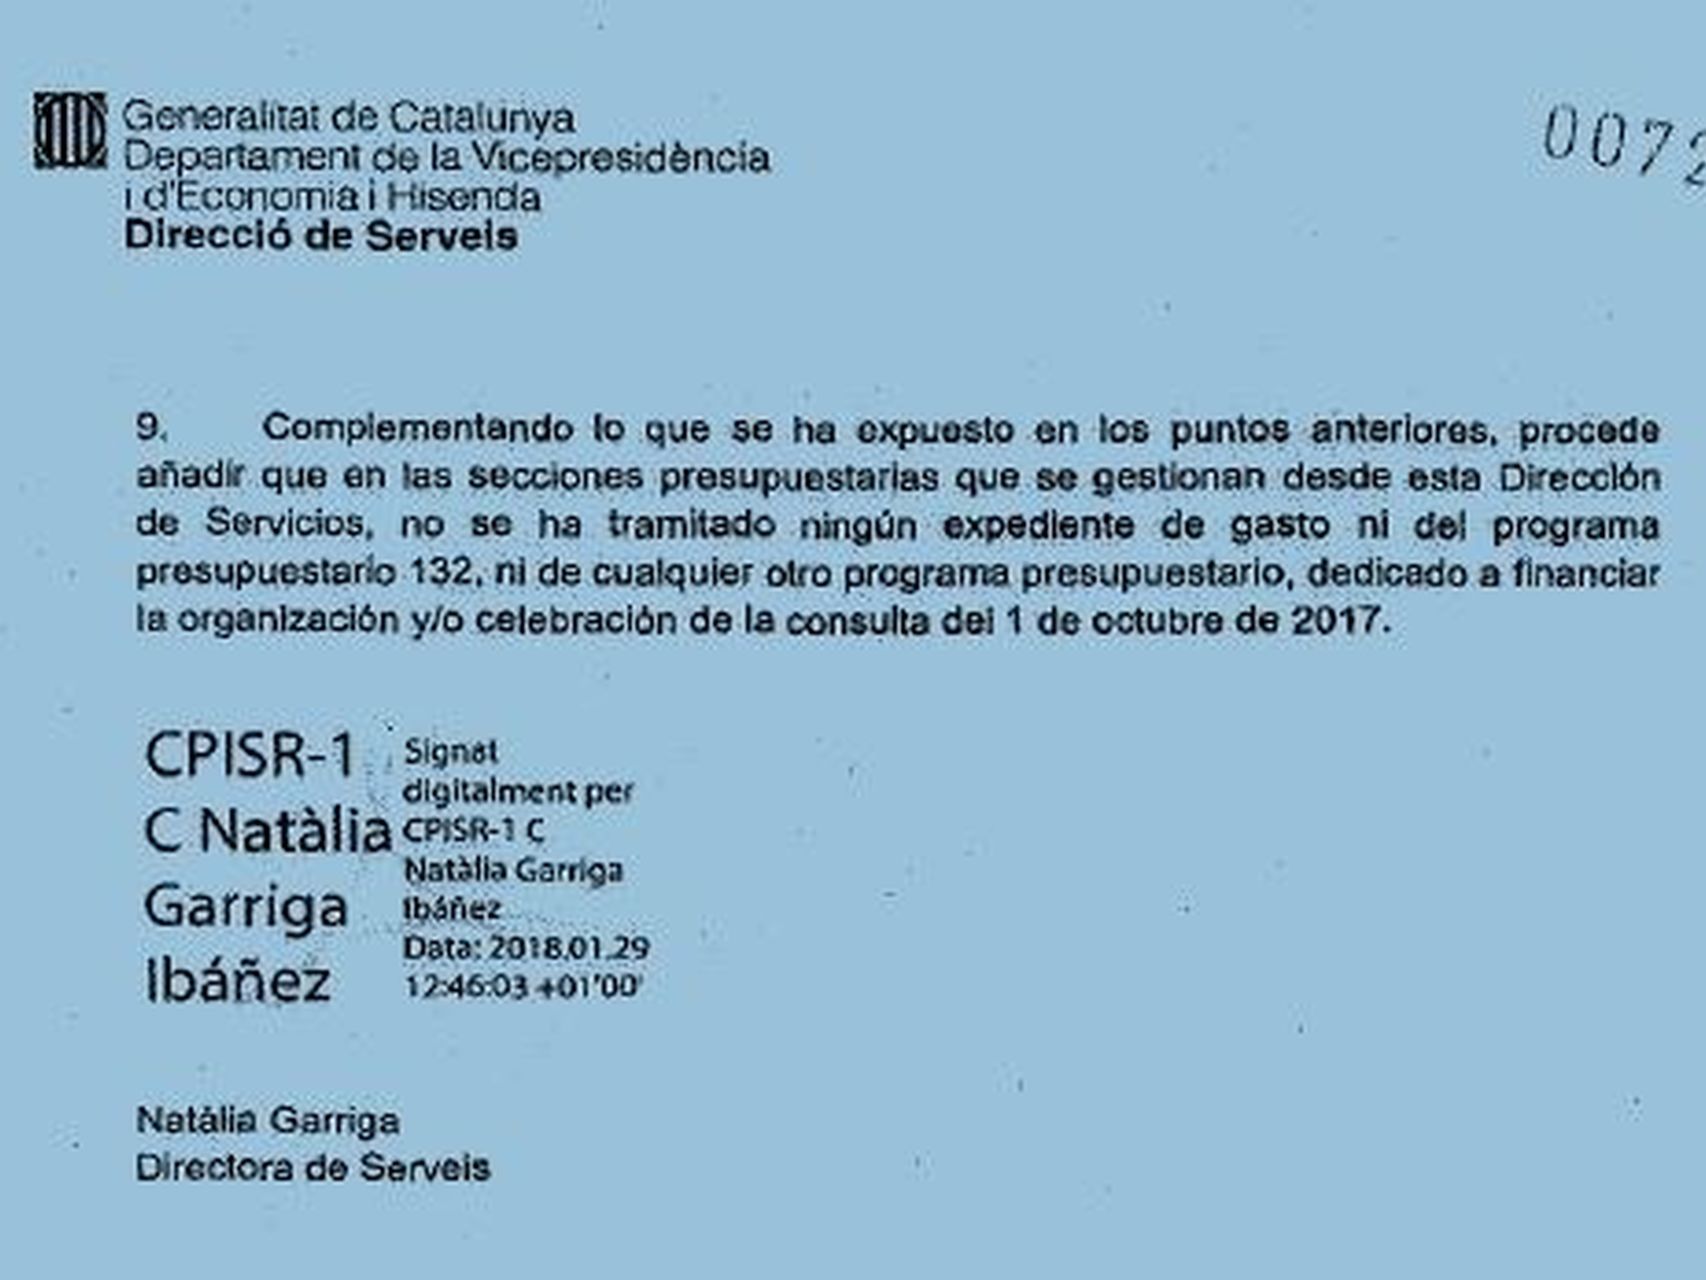 Certificación de Natalia Garriga del pasado 29 de enero.